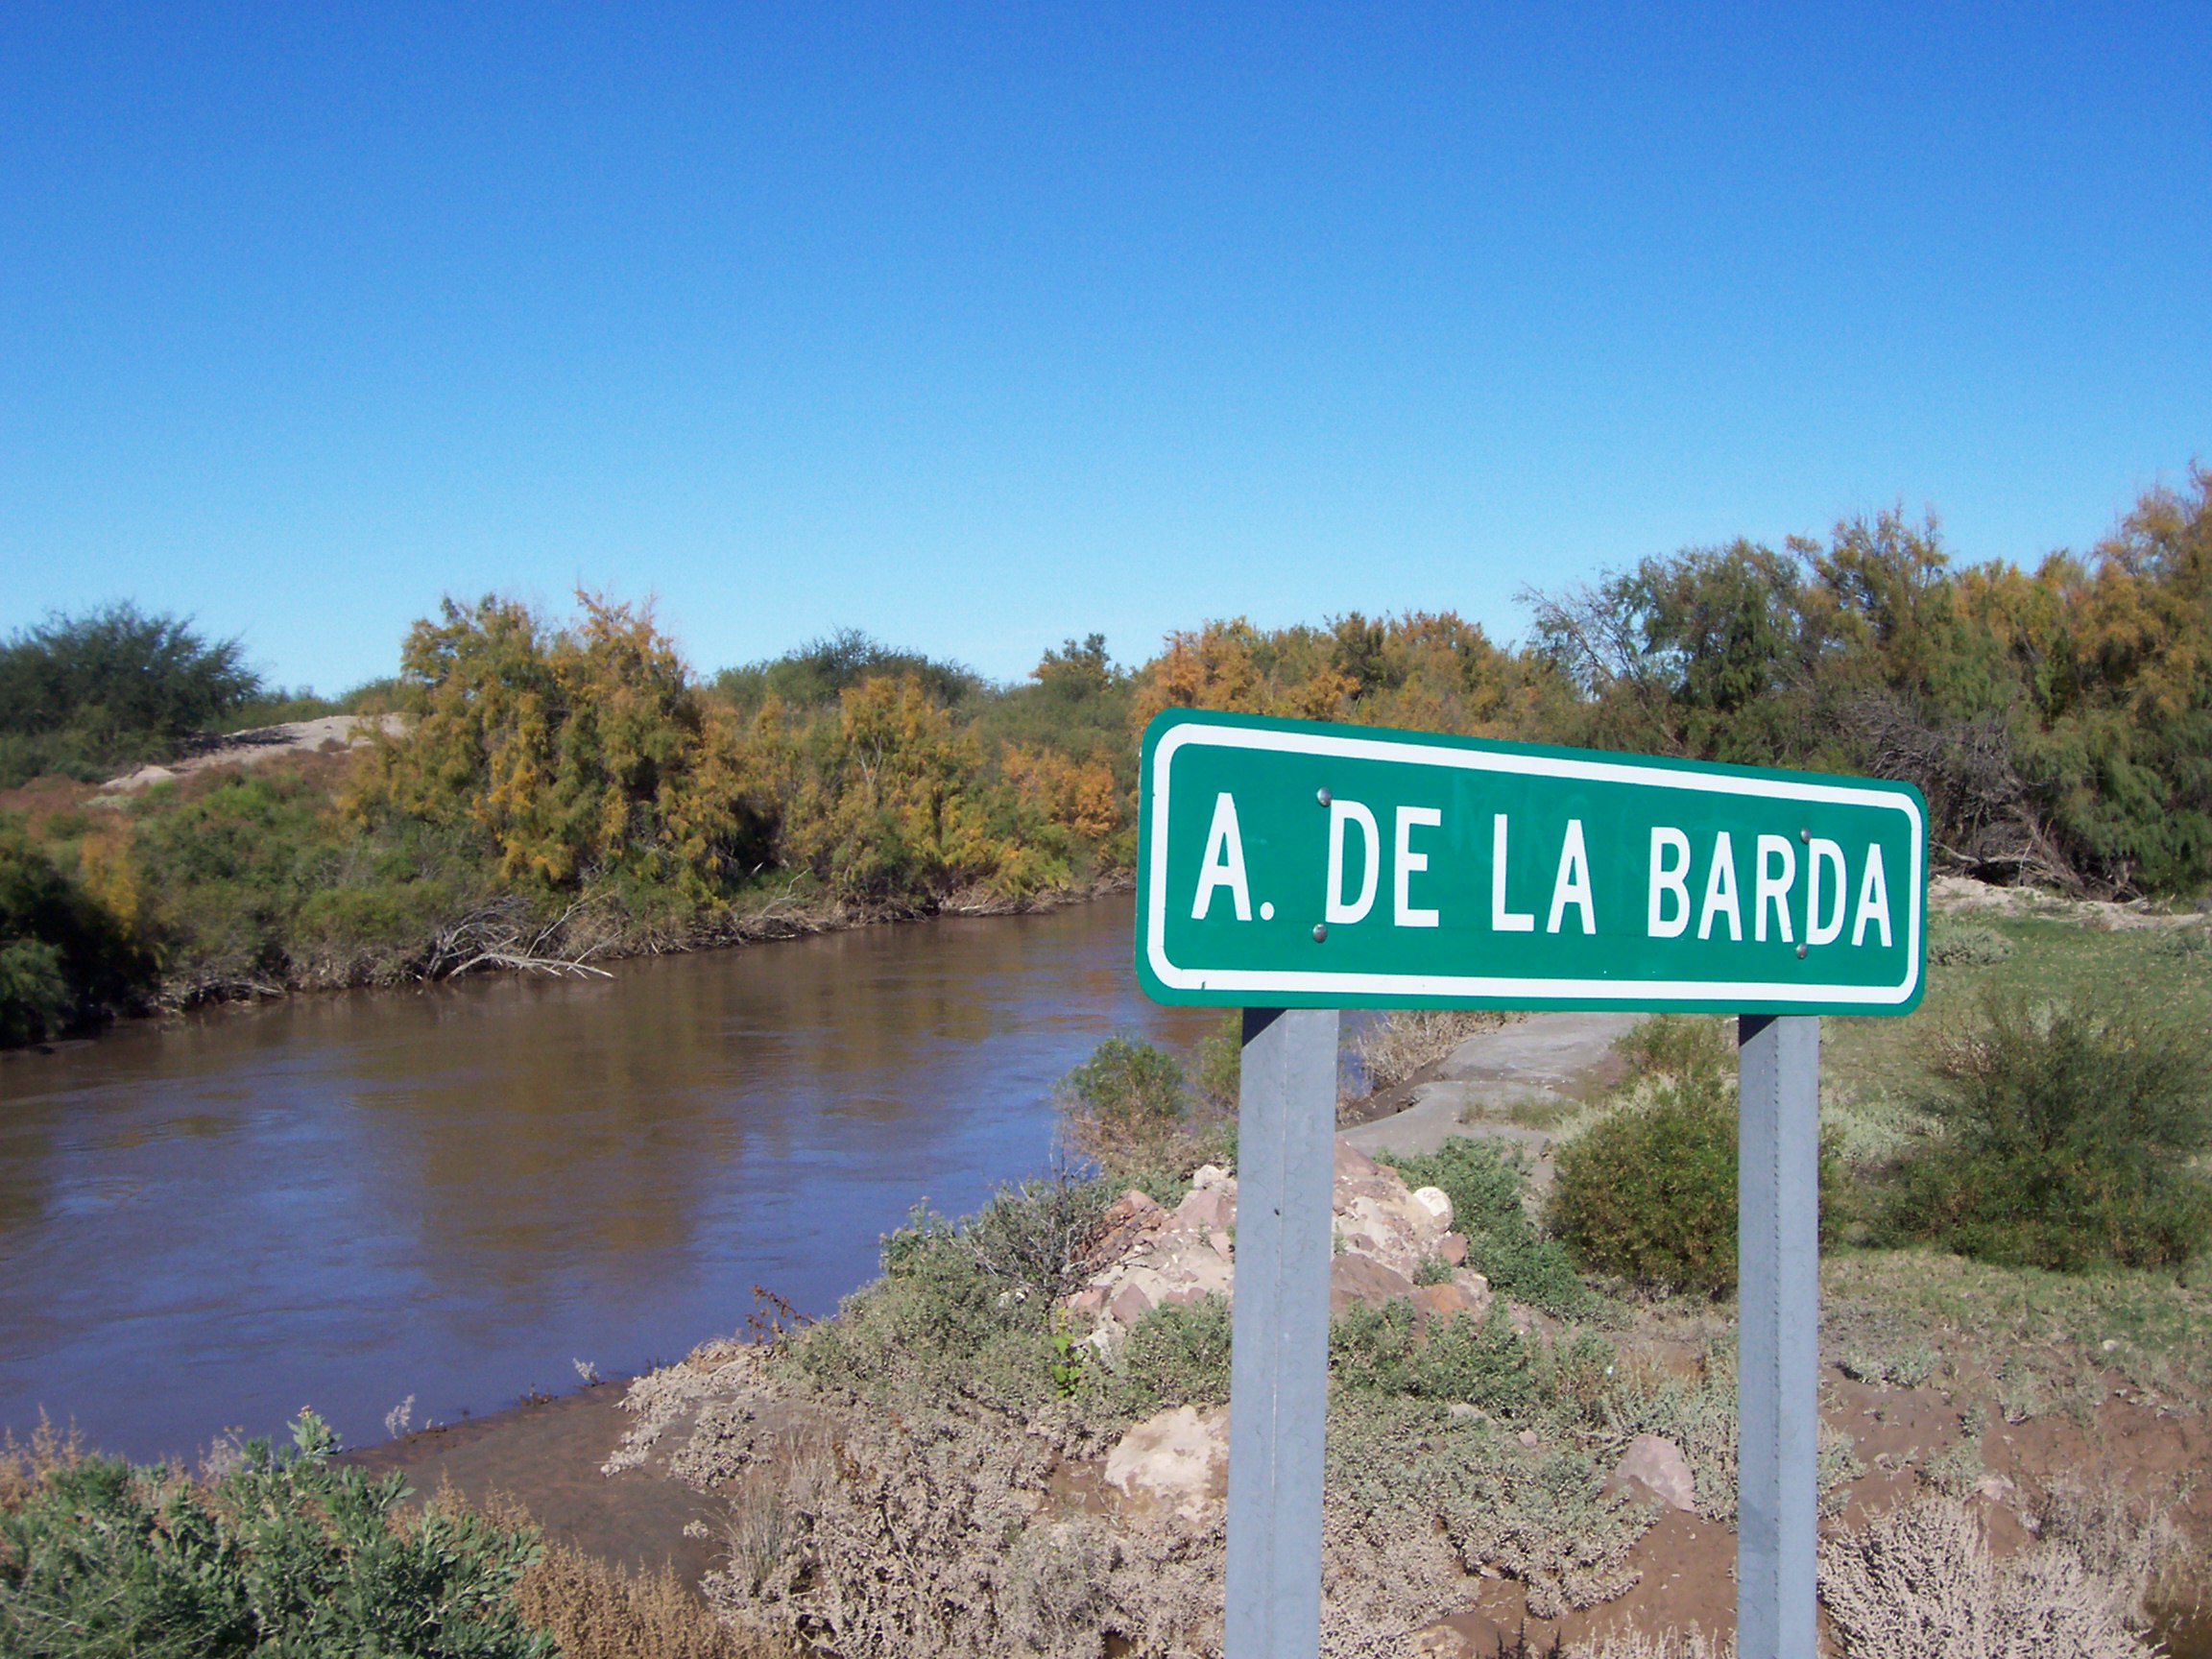 Arroyo de la Barda